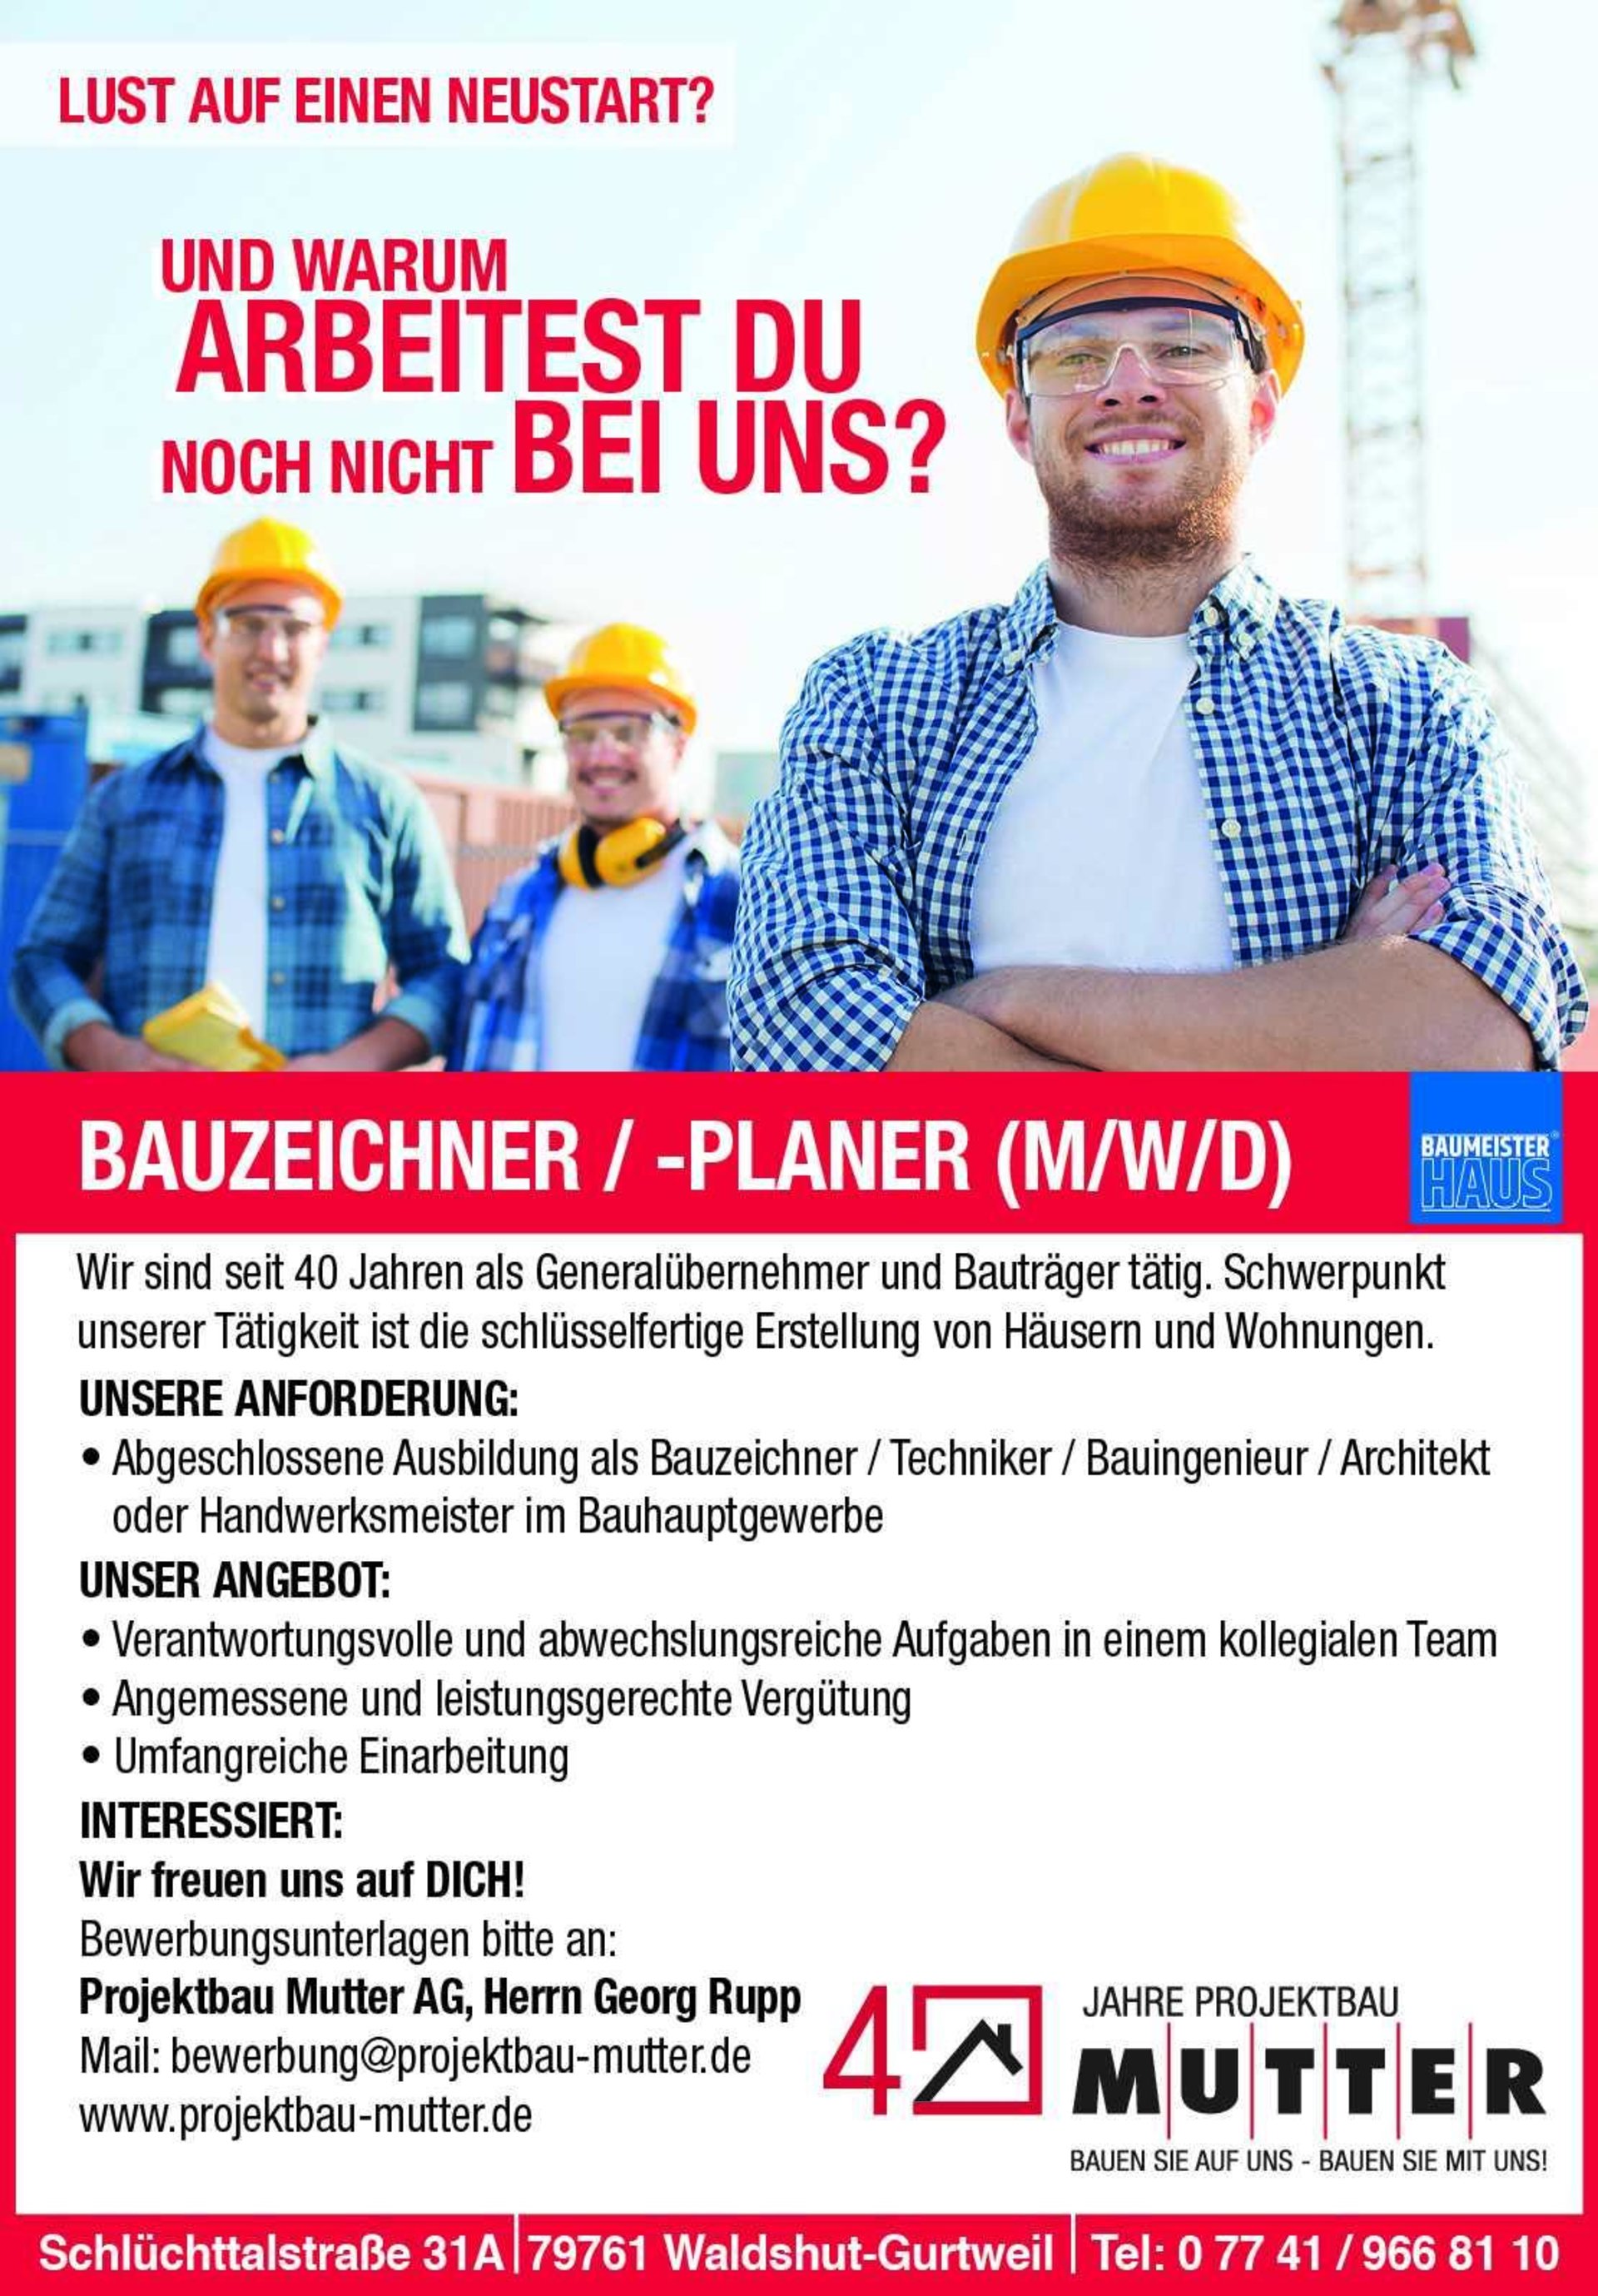 Projektbau Mutter sucht Bauzeichner (m/w/d)